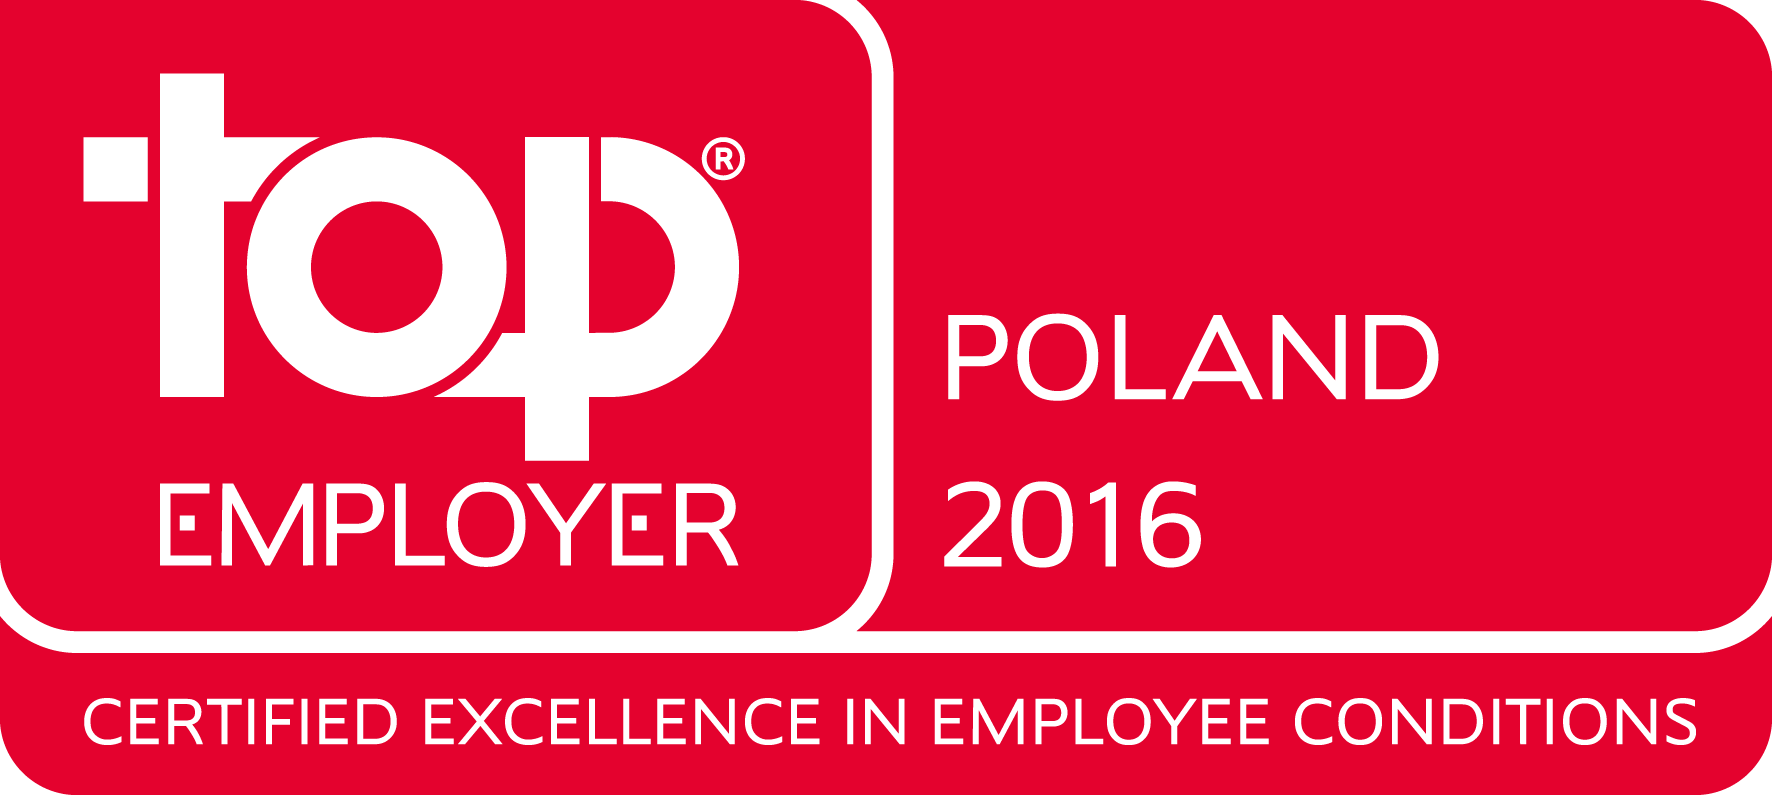 Top Employer Polska 2016 dla Citi Handlowy i CSC Polska 